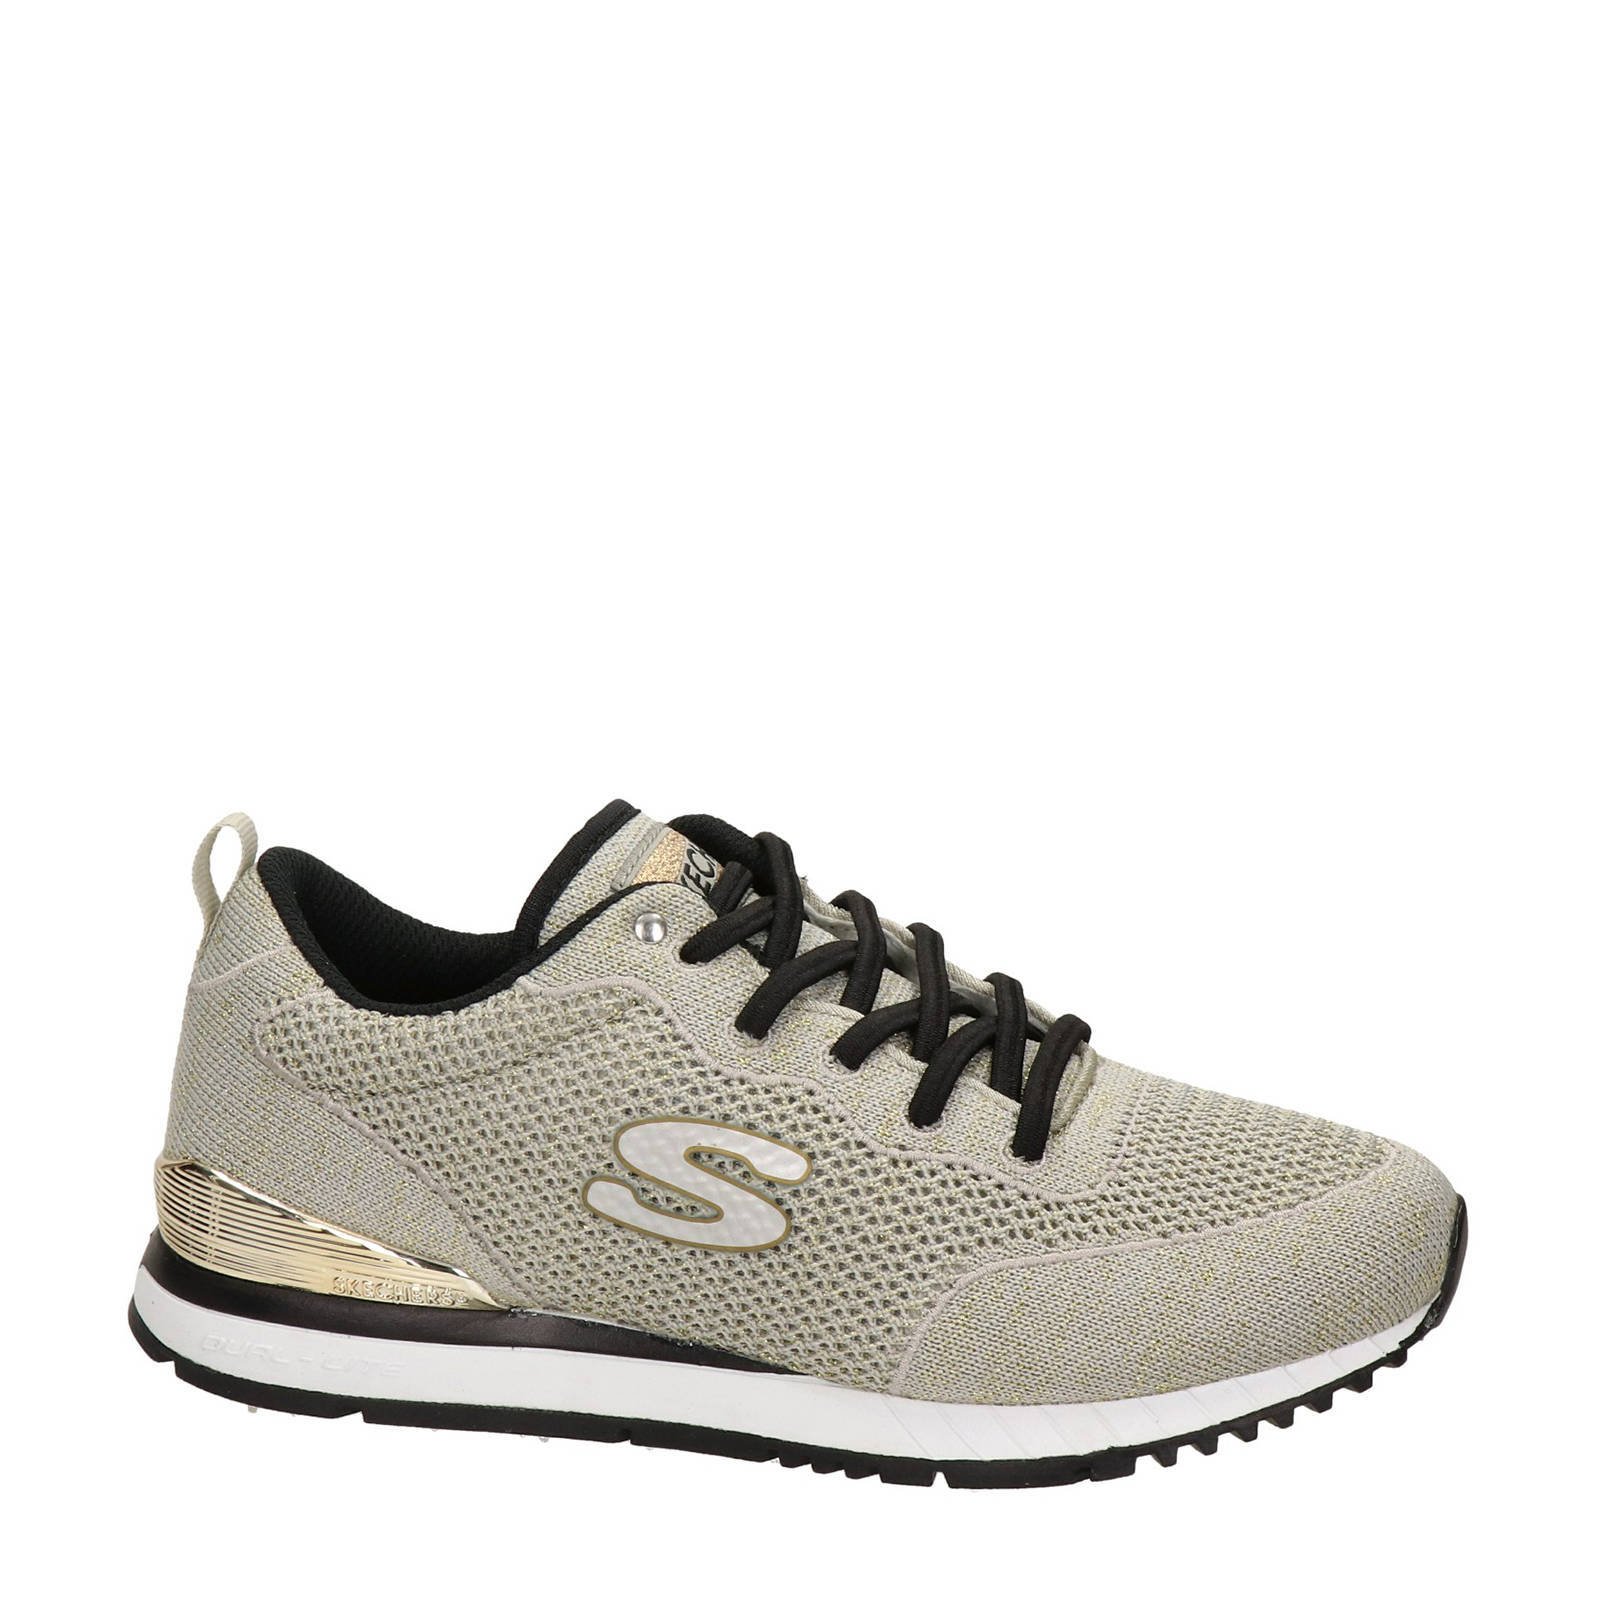 Skechers Originals sneakers beige/goud 